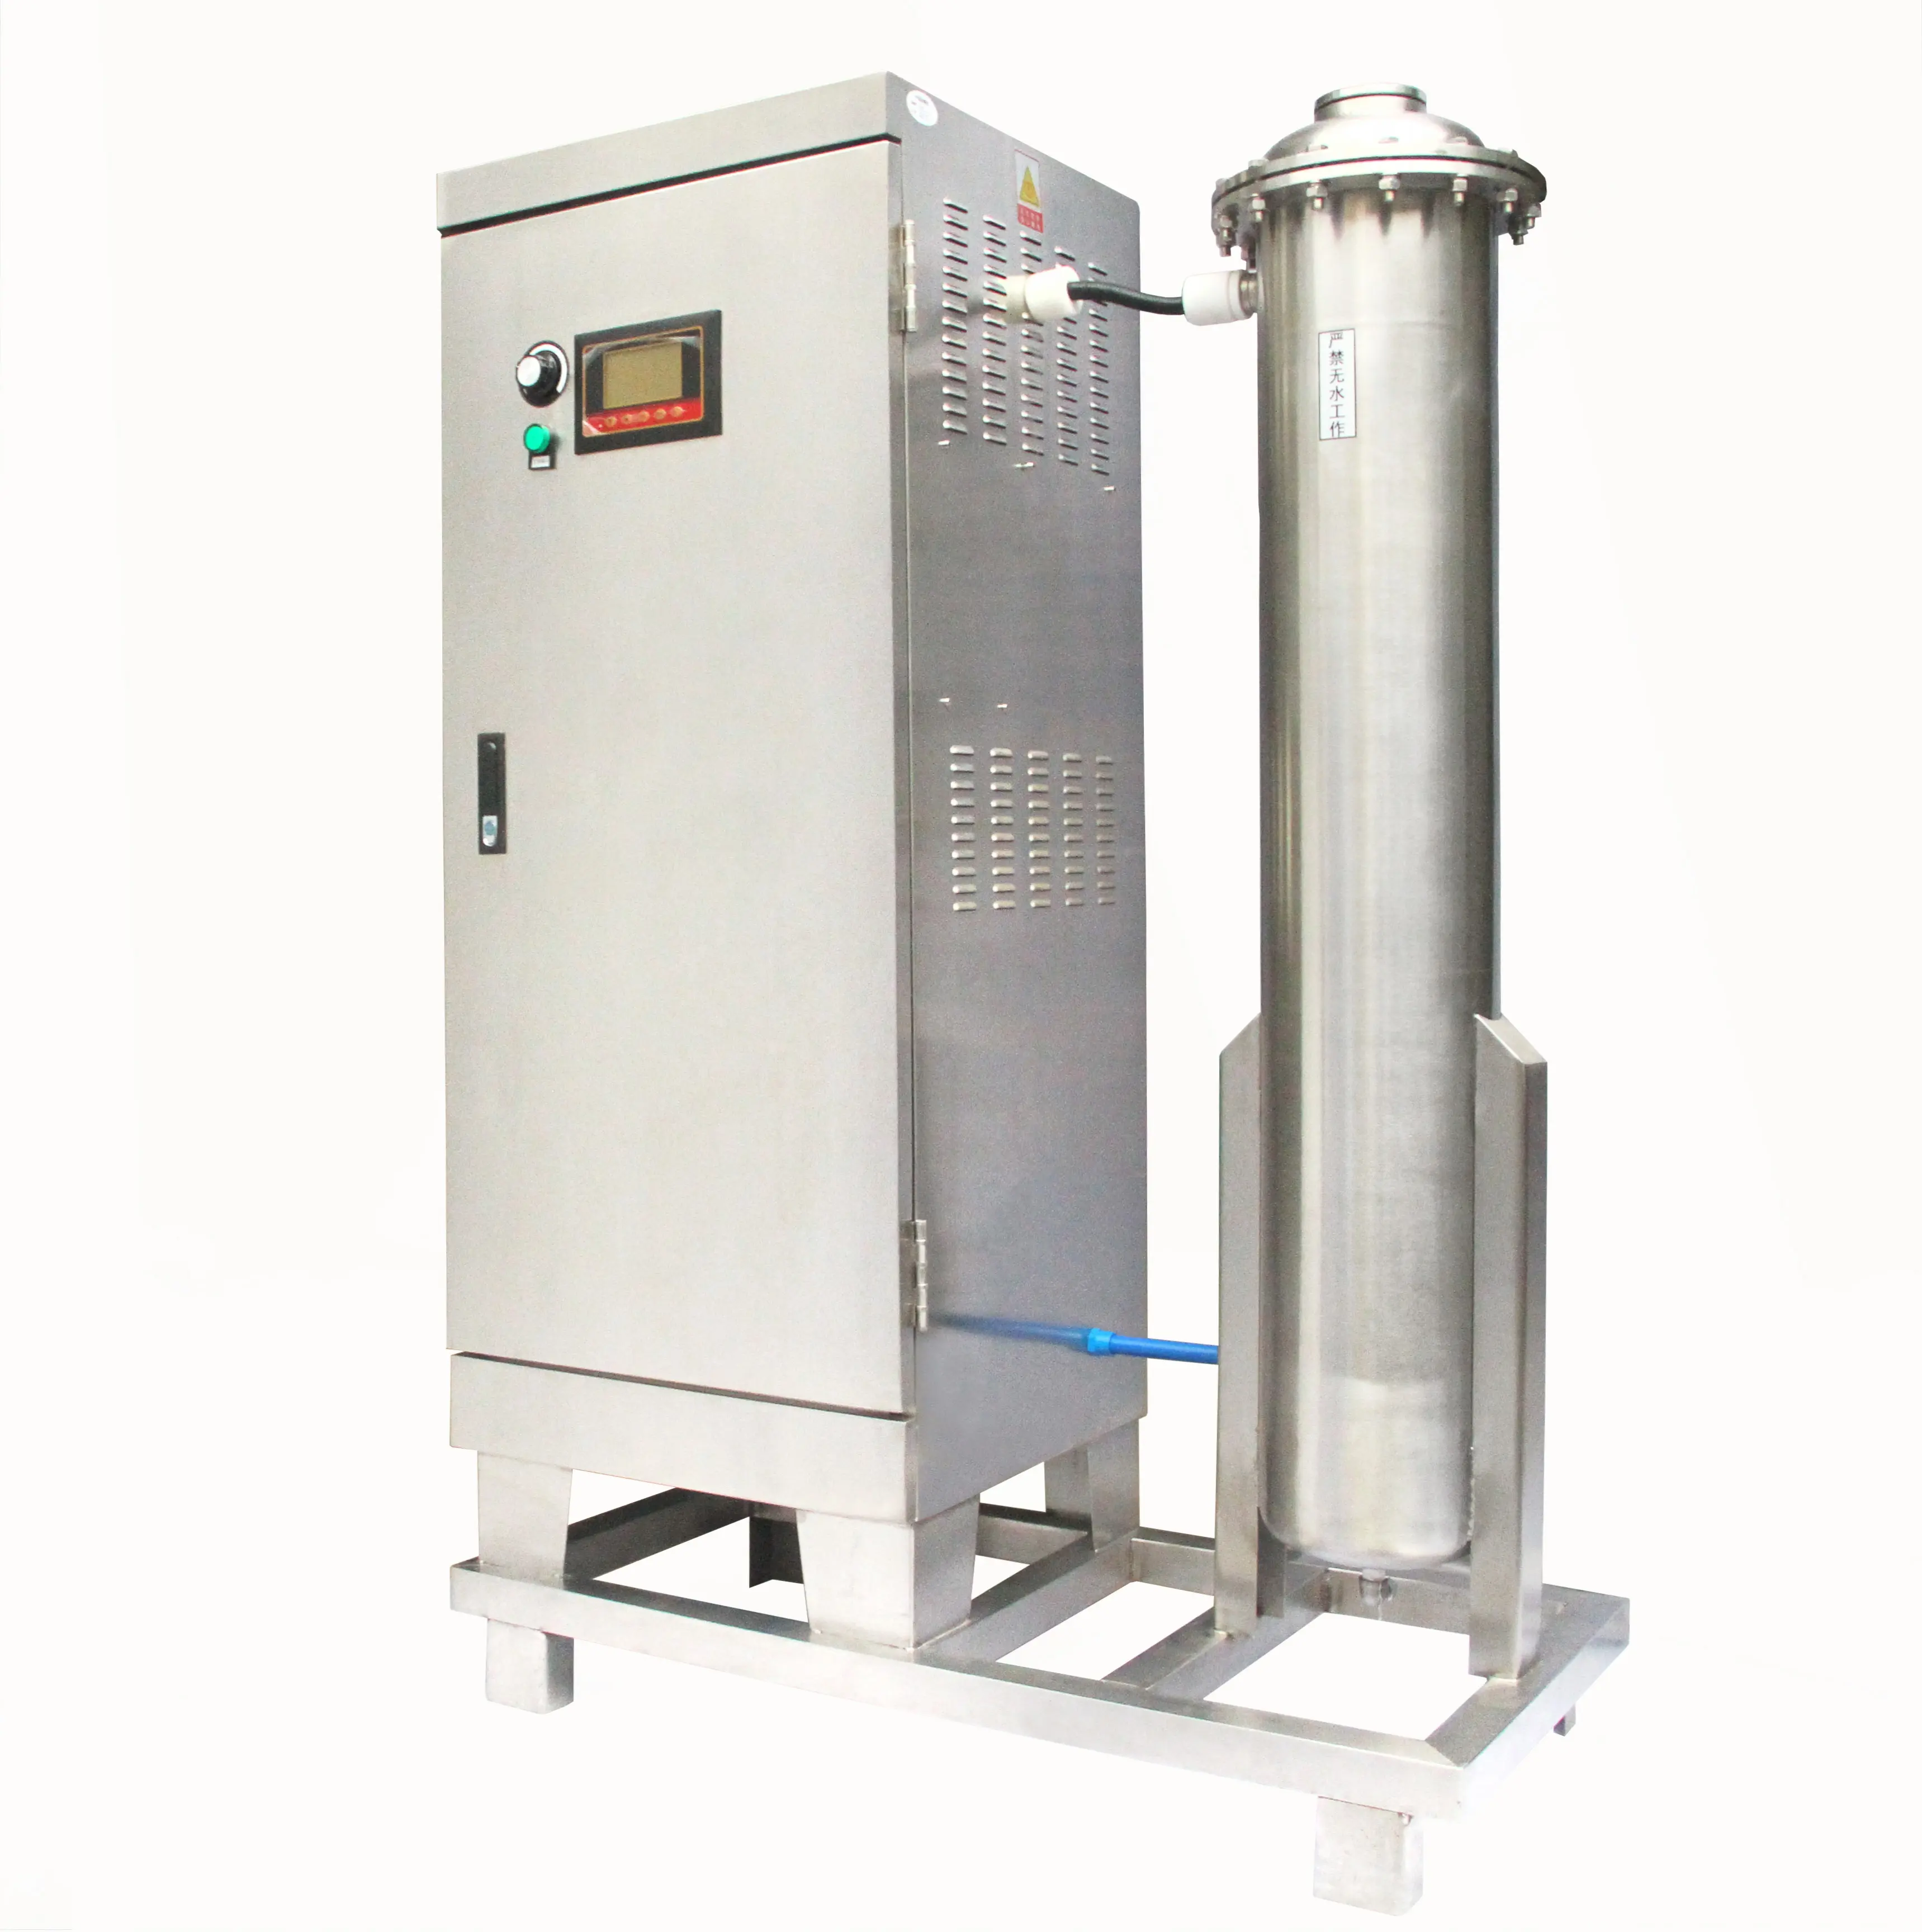 BSOG CE 400g generatore di ozono industriale per il trattamento delle acque reflue, processo di ossidazione dell'acqua